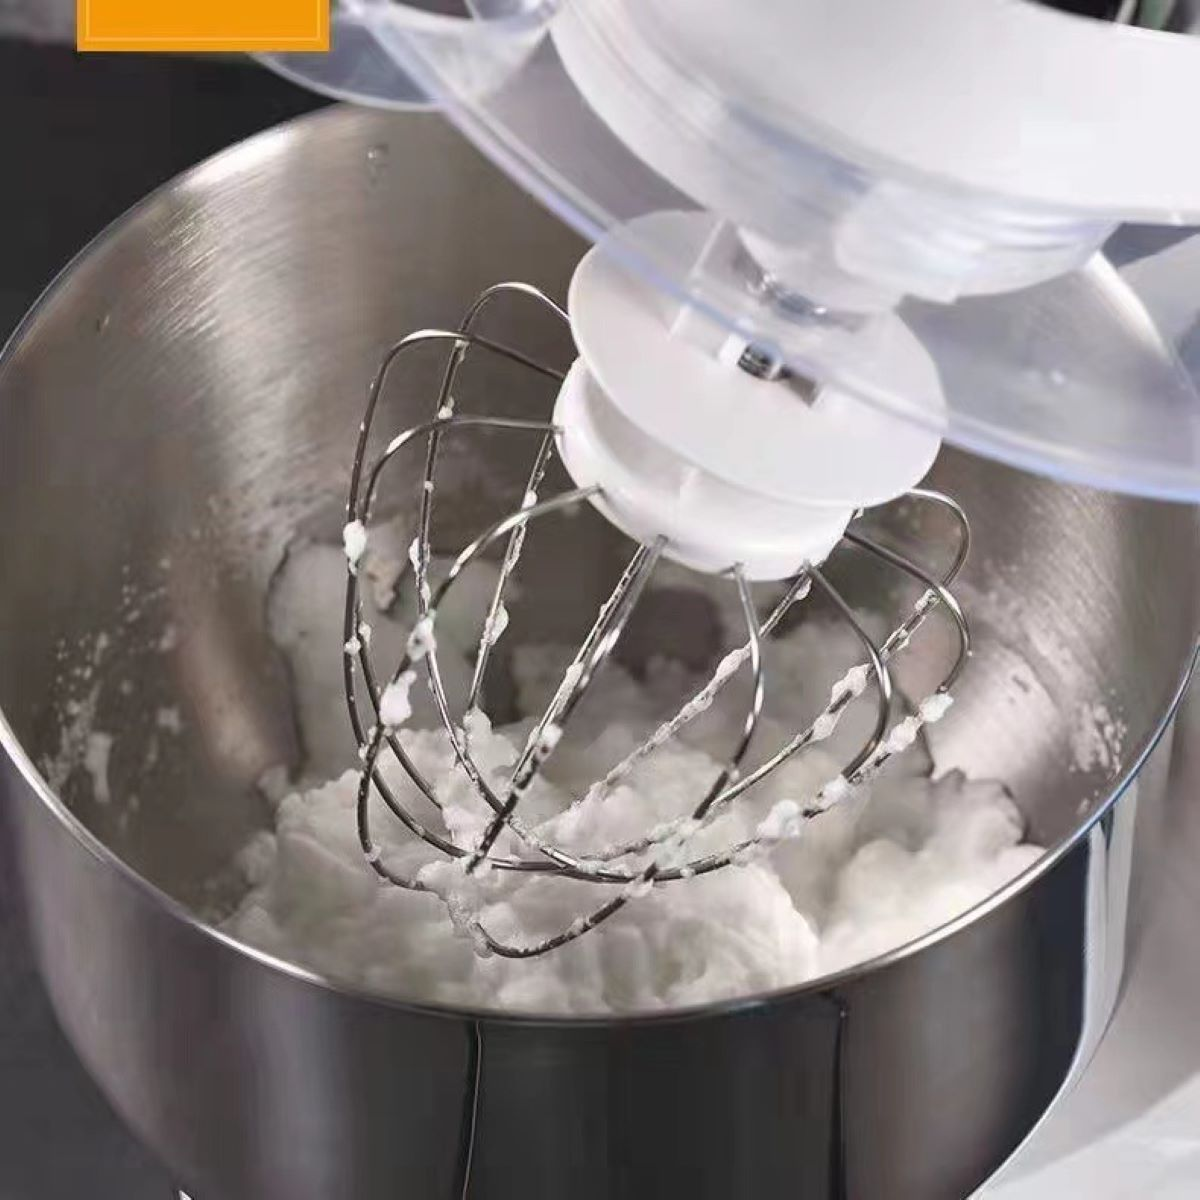 Handarbeit Teigimitation Vollautomatische Knetmaschine Weiß Watt) ENBAOXIN (1500 Spritzwasserschutzdeckel, mit Küchenmaschine zur